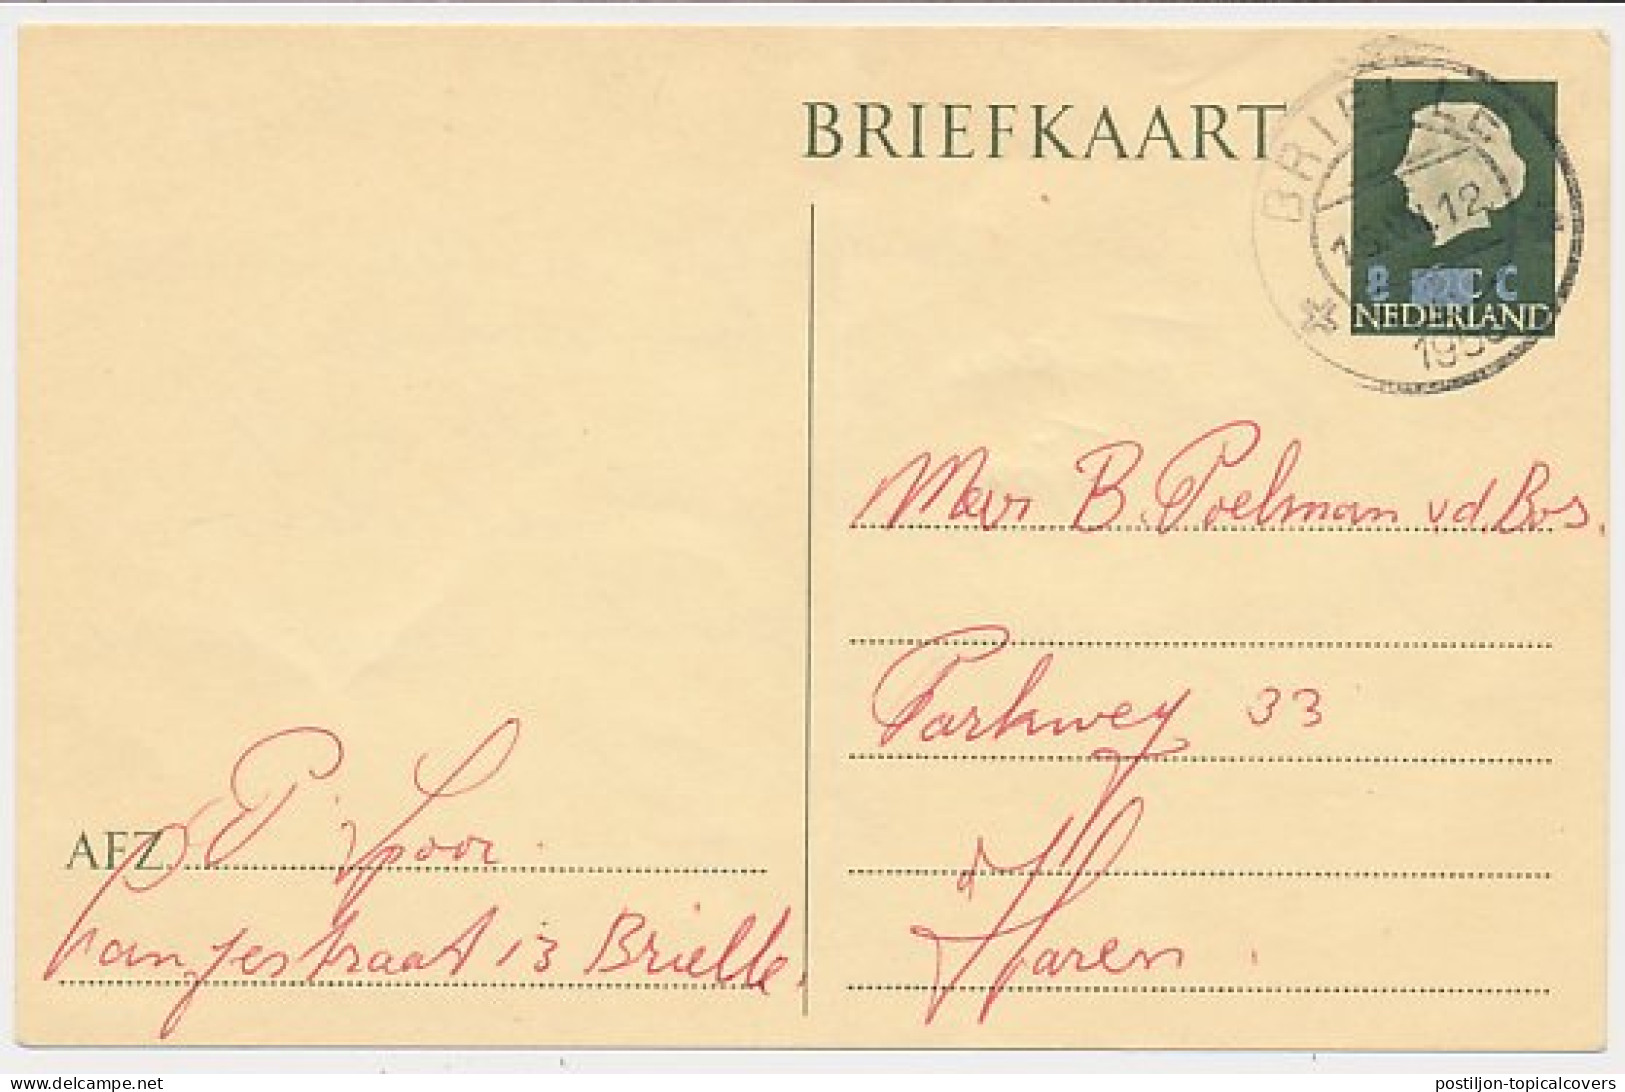 Briefkaart G. 324 Brielle - Haren 1958 - Postal Stationery